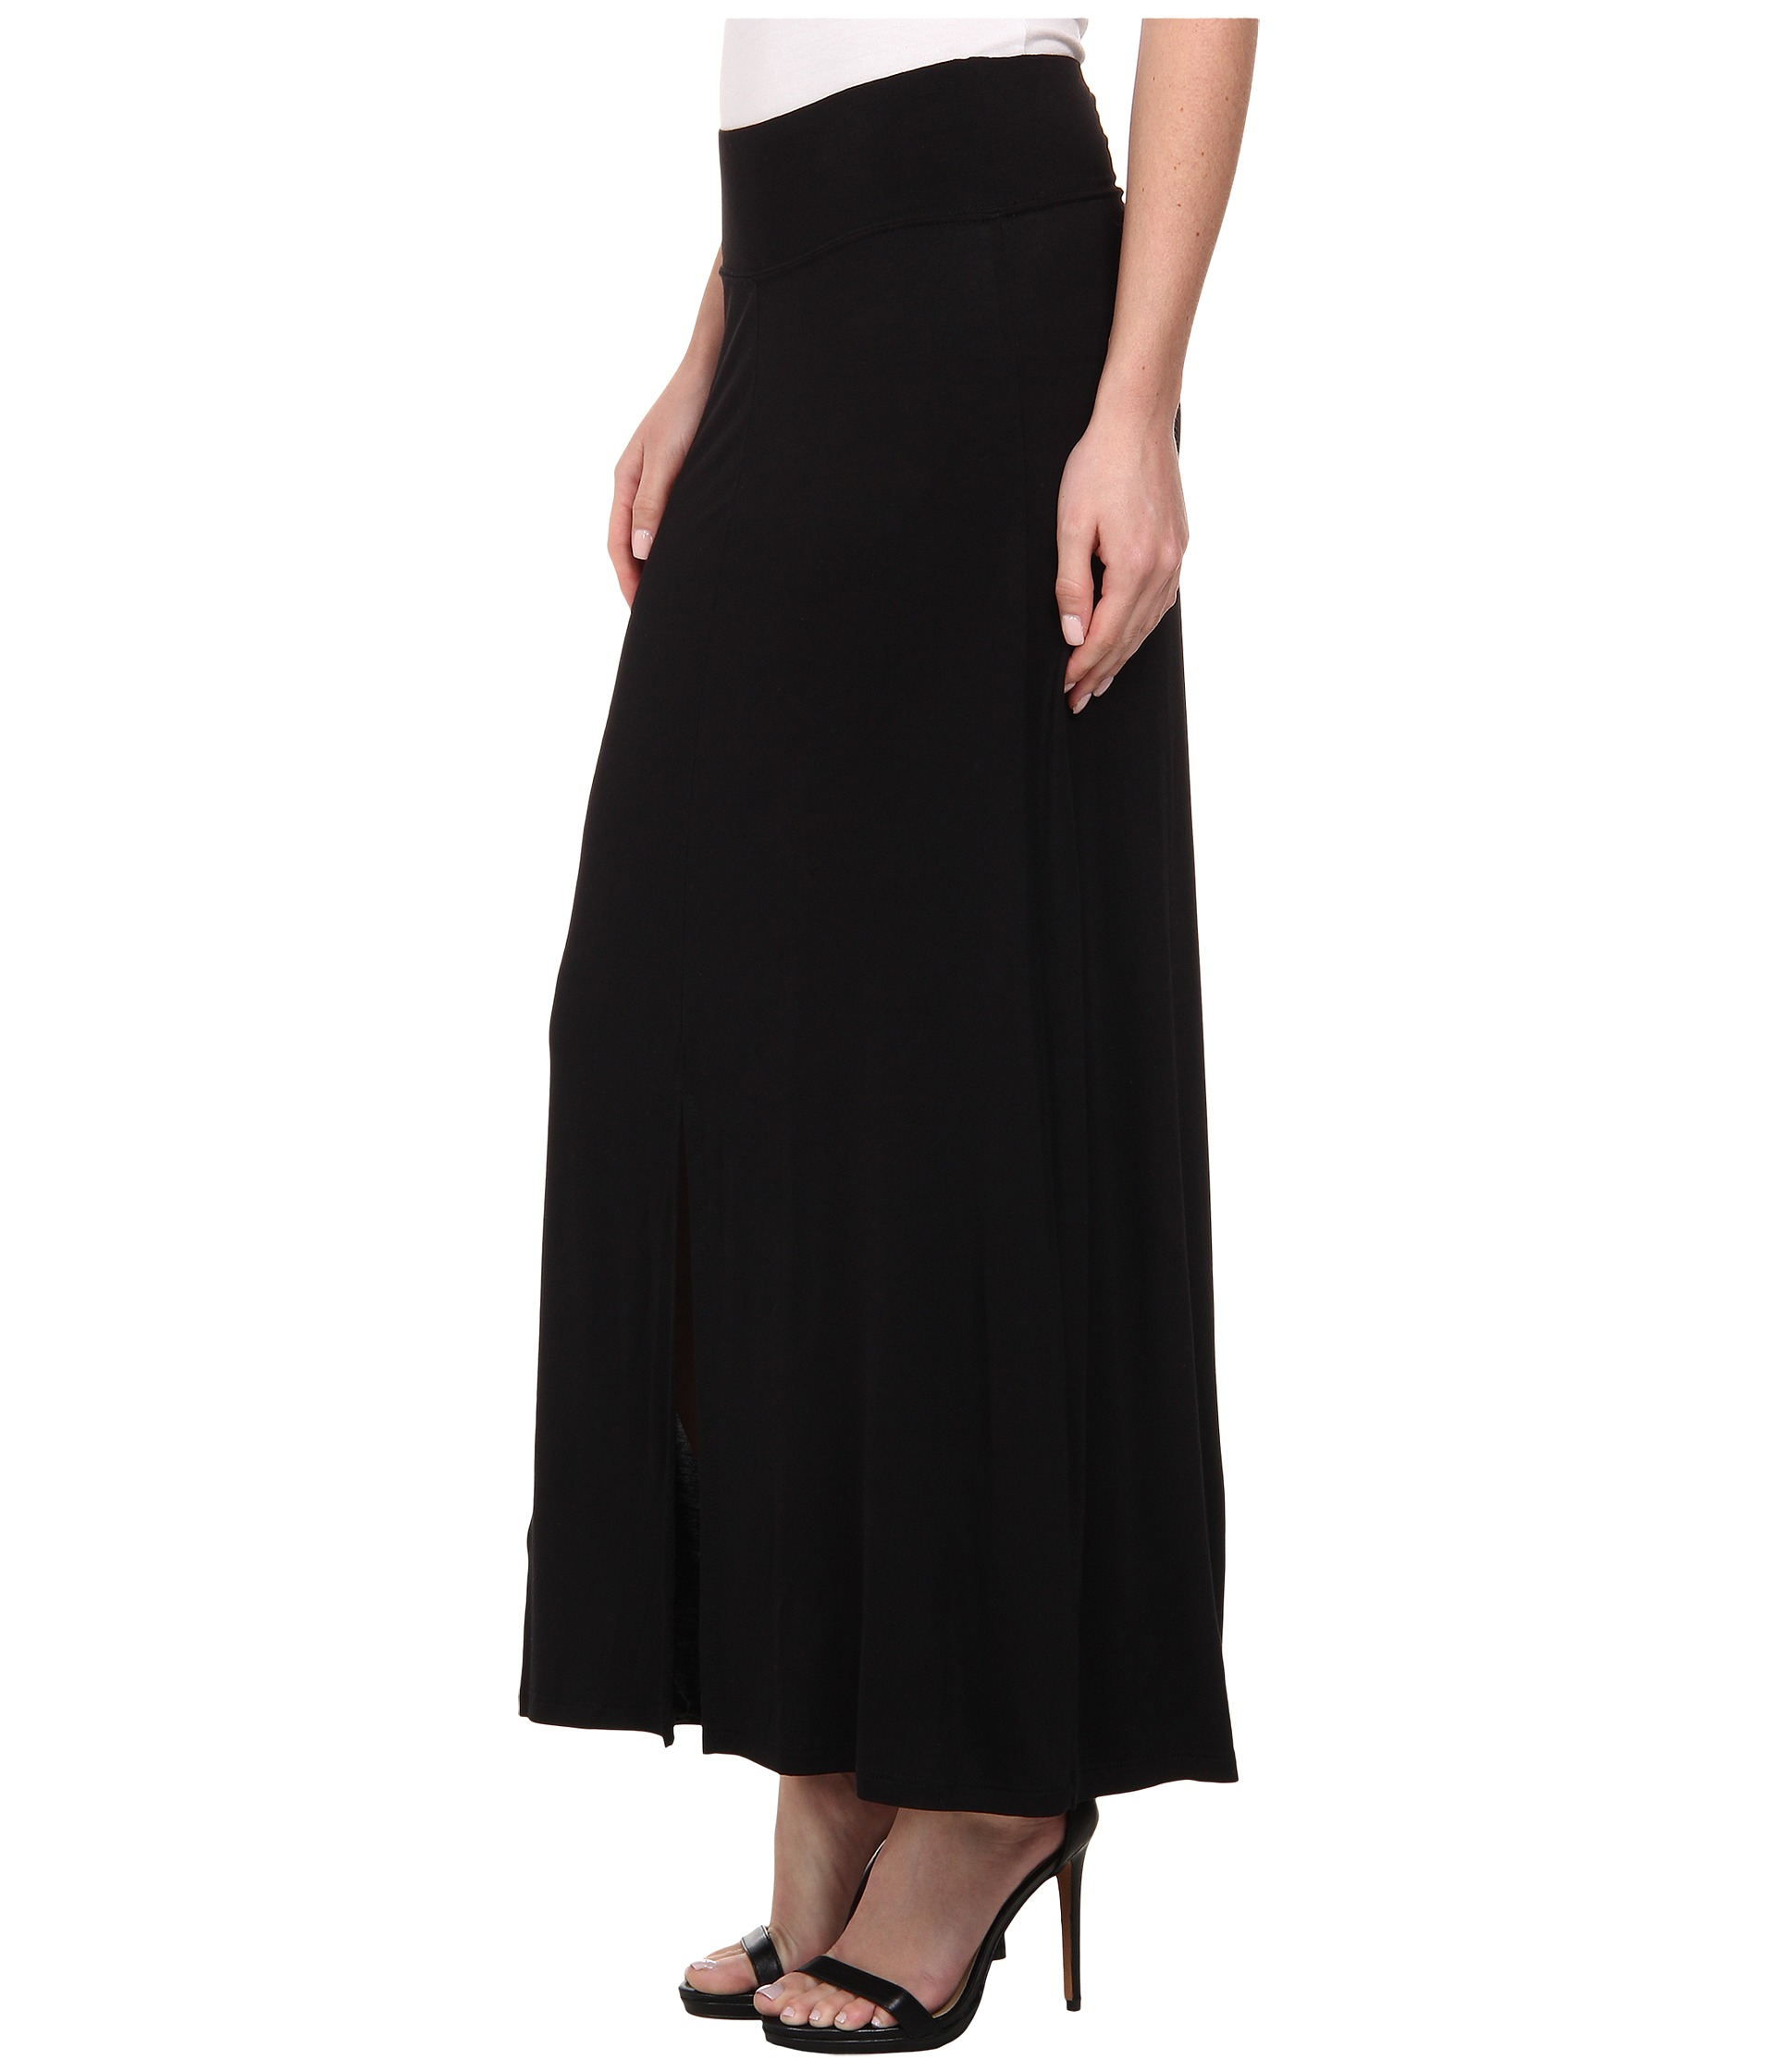 Lyst - Kensie Lightweight Viscose Spandex Skirt Ks4k6145 in Black